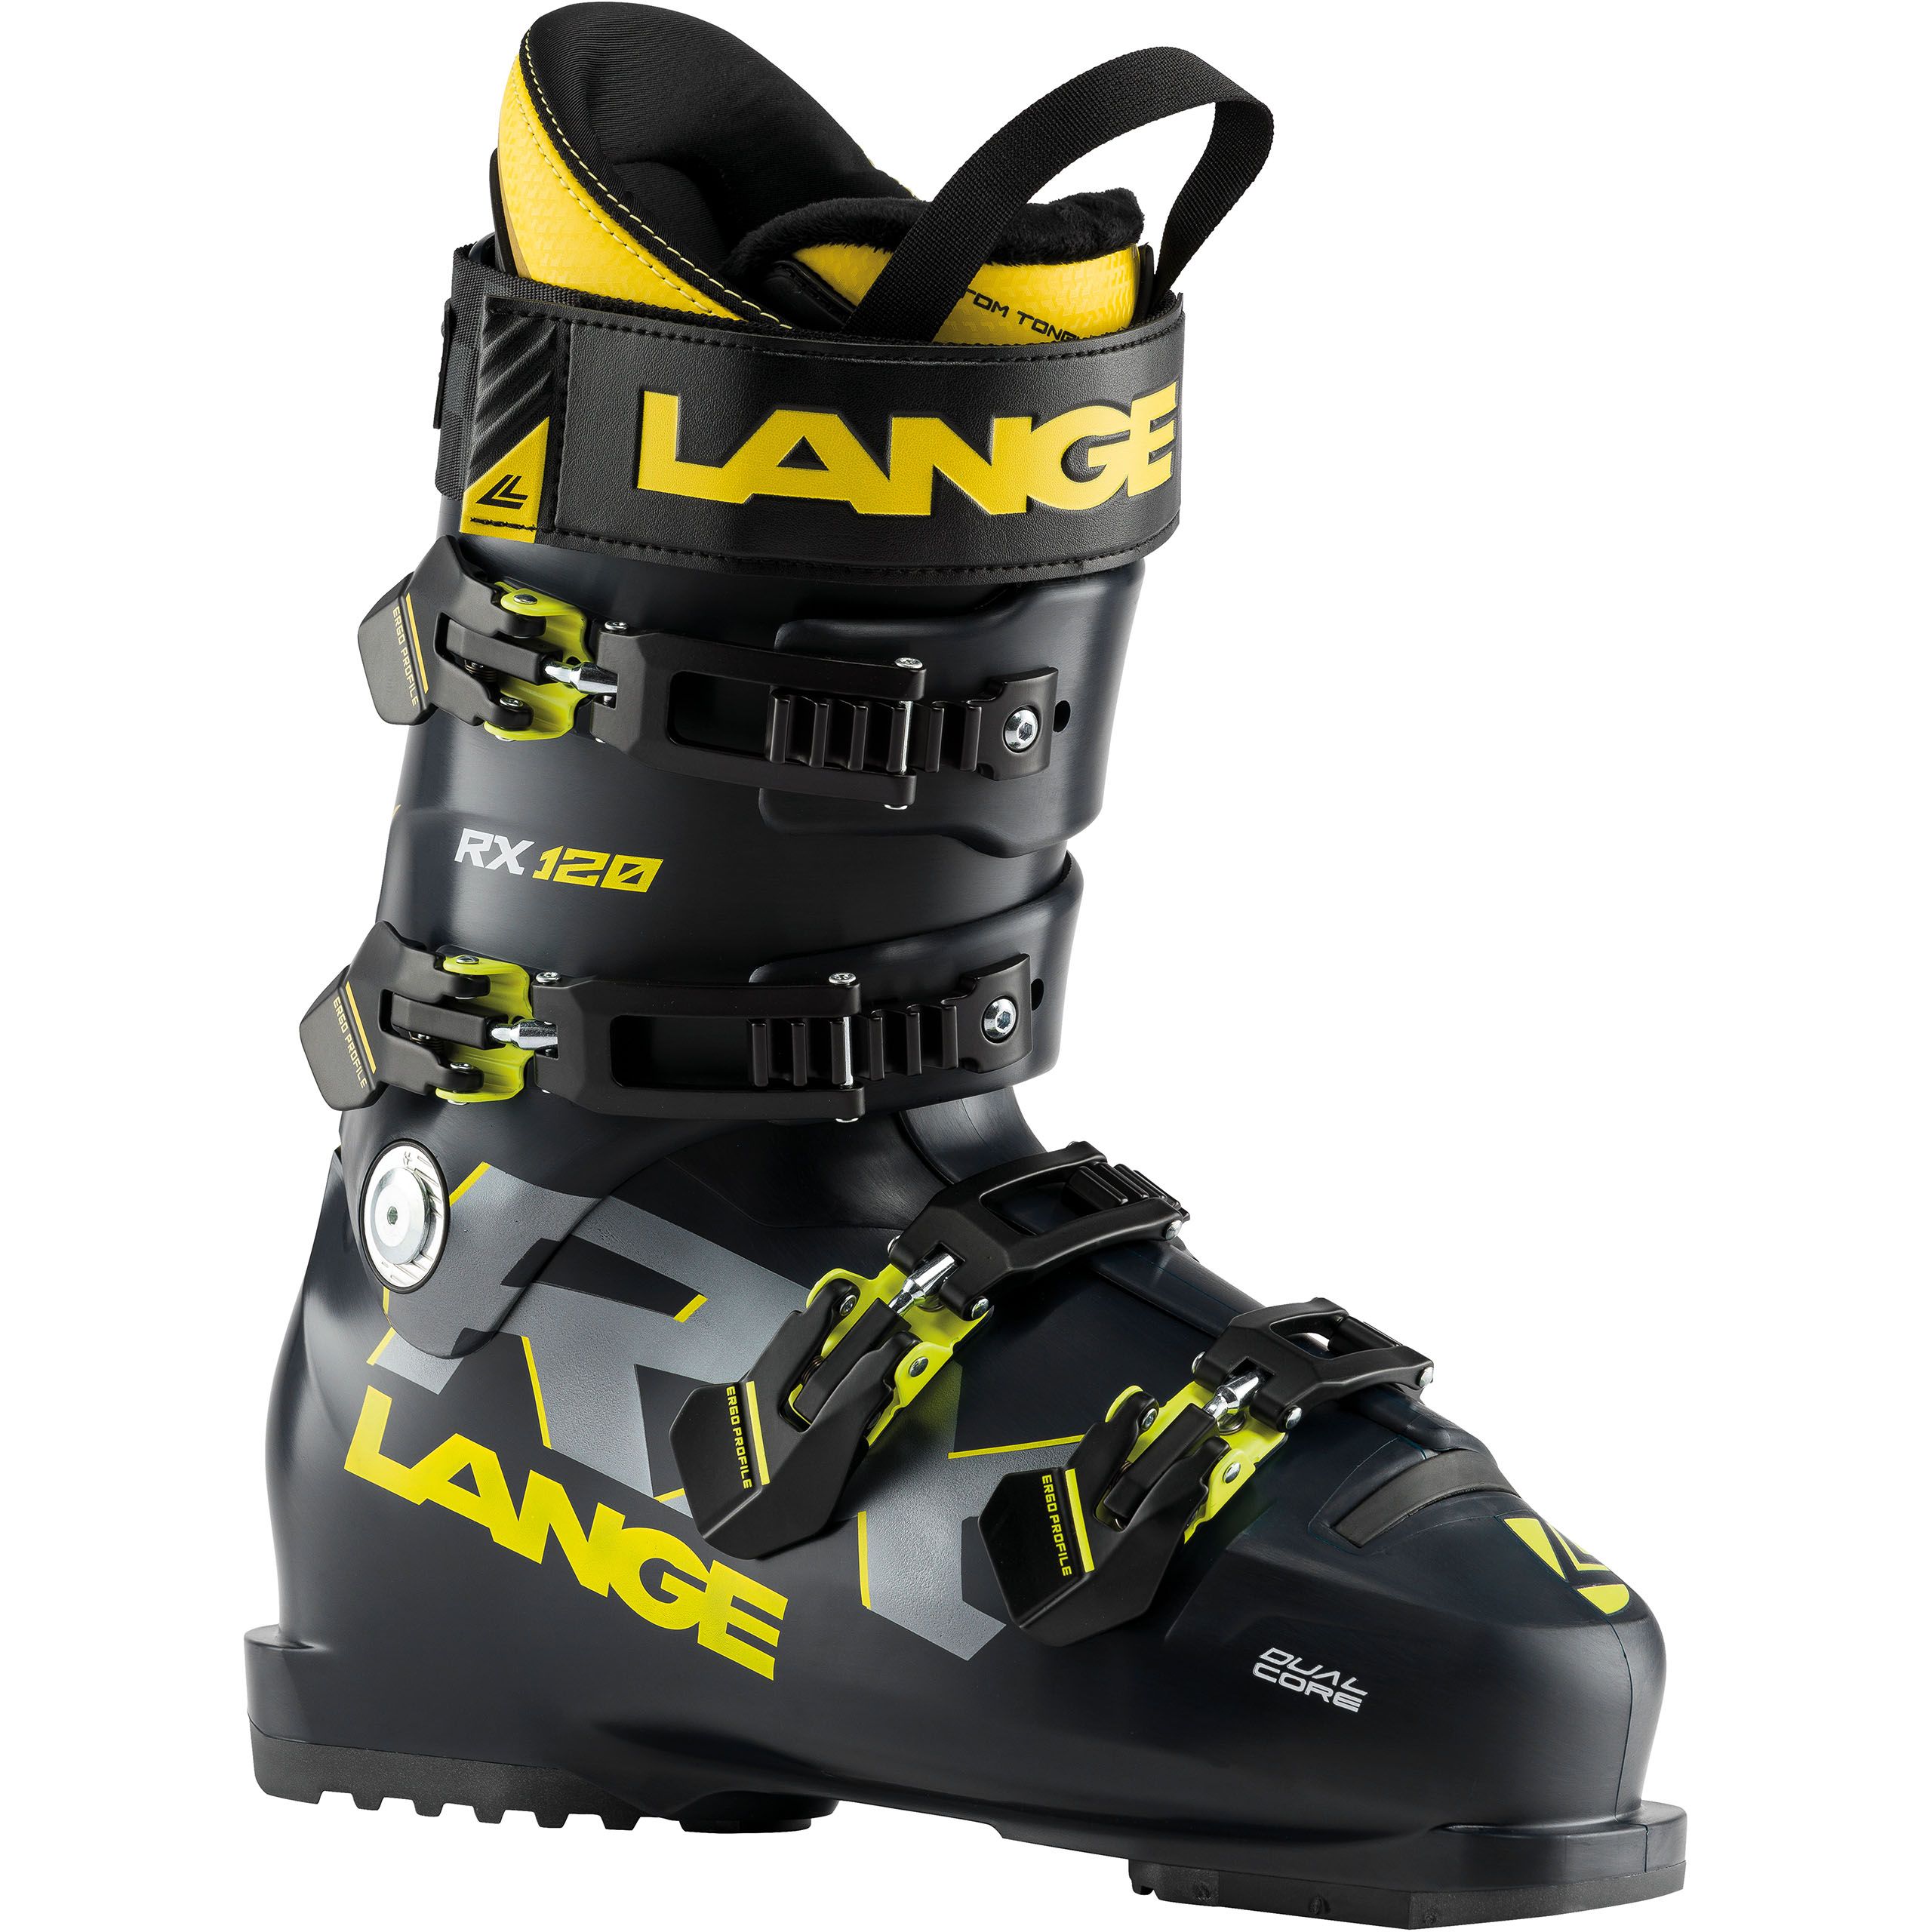 Lange Rx120 Ski Boots